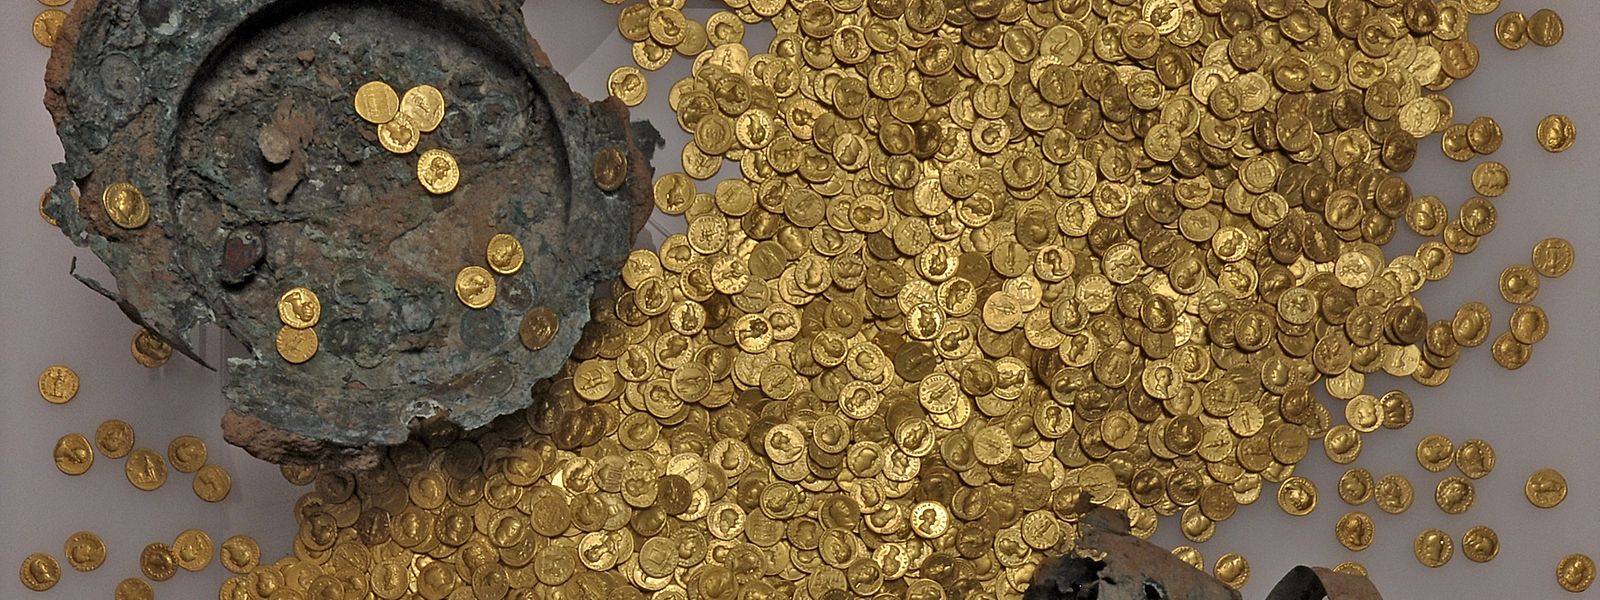 Ein Teil der Münzen mit dem beschädigten Kupfergefäß. 